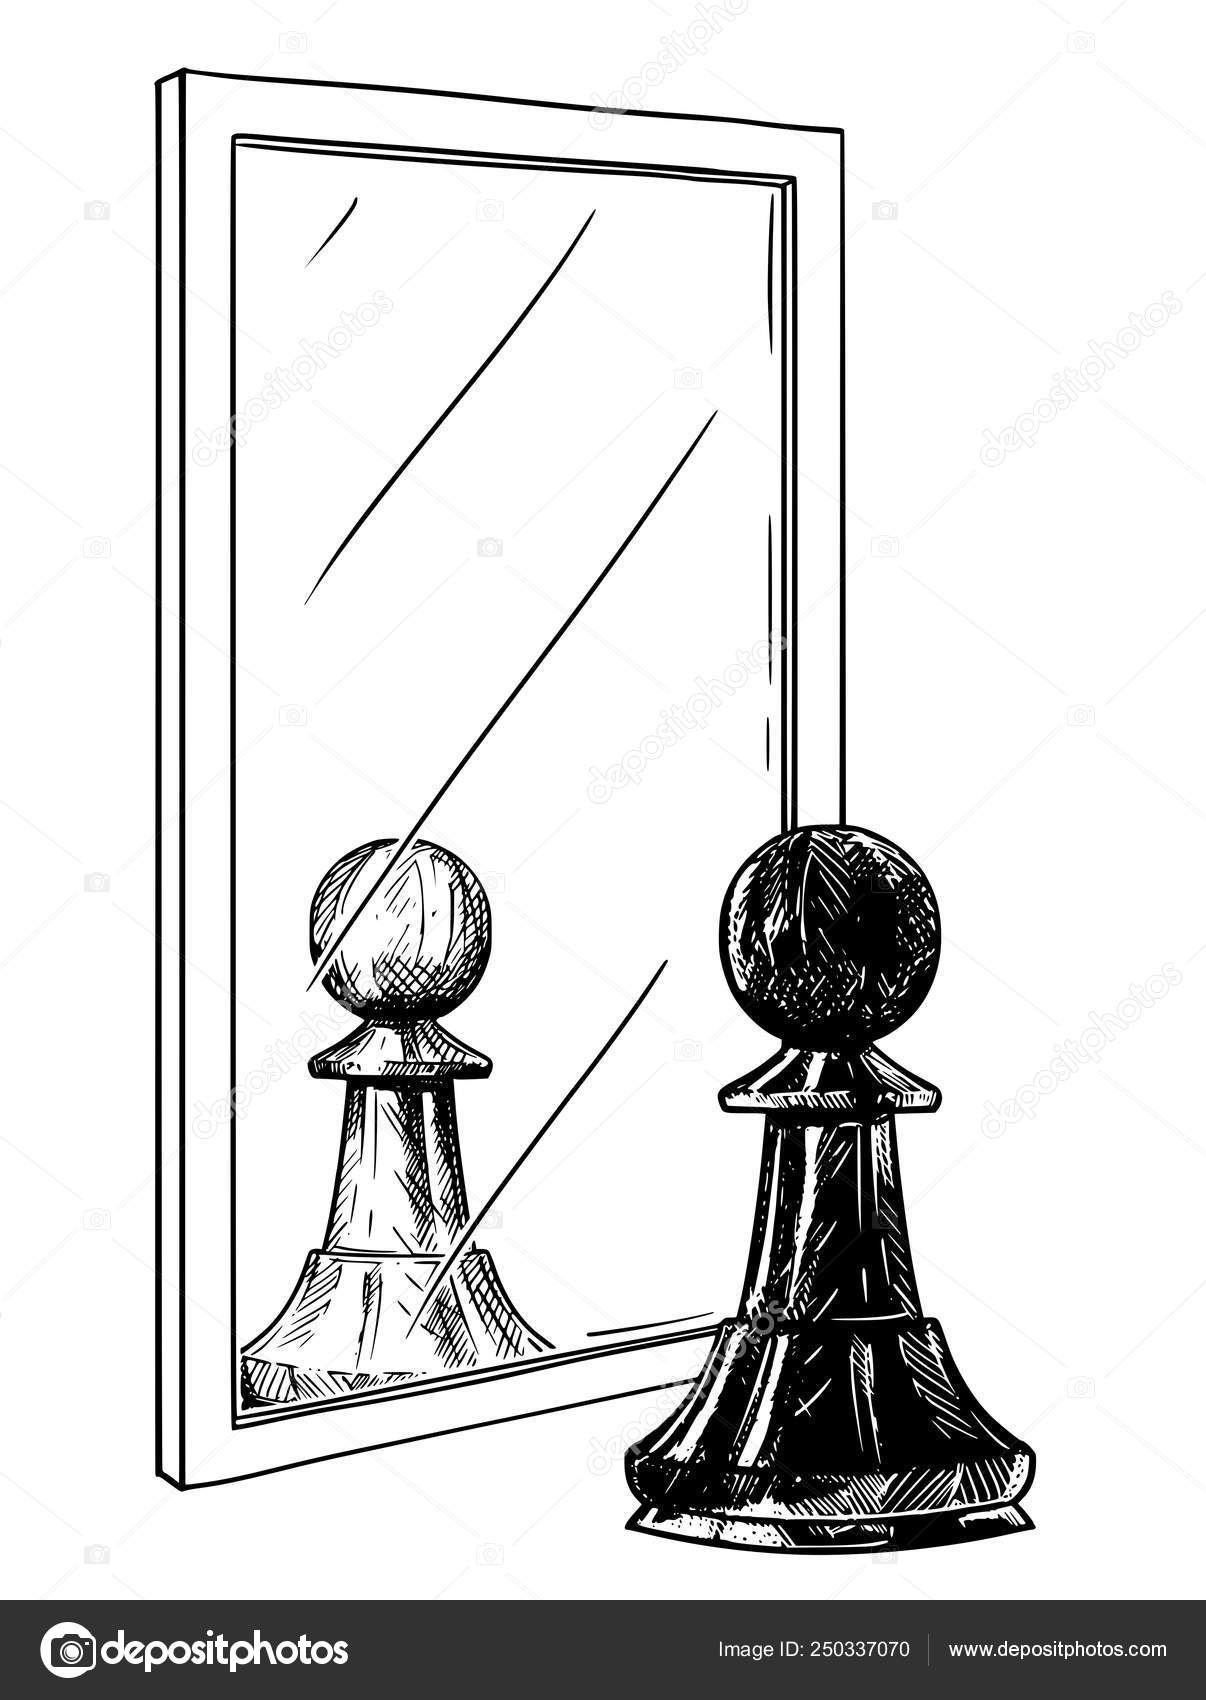 Desenho de Desenhos Animados de Peão de Xadrez Negro Refletindo no Espelho  como Metáfora Branca, Boa e Má imagem vetorial de ursus@zdeneksasek.com©  250337070